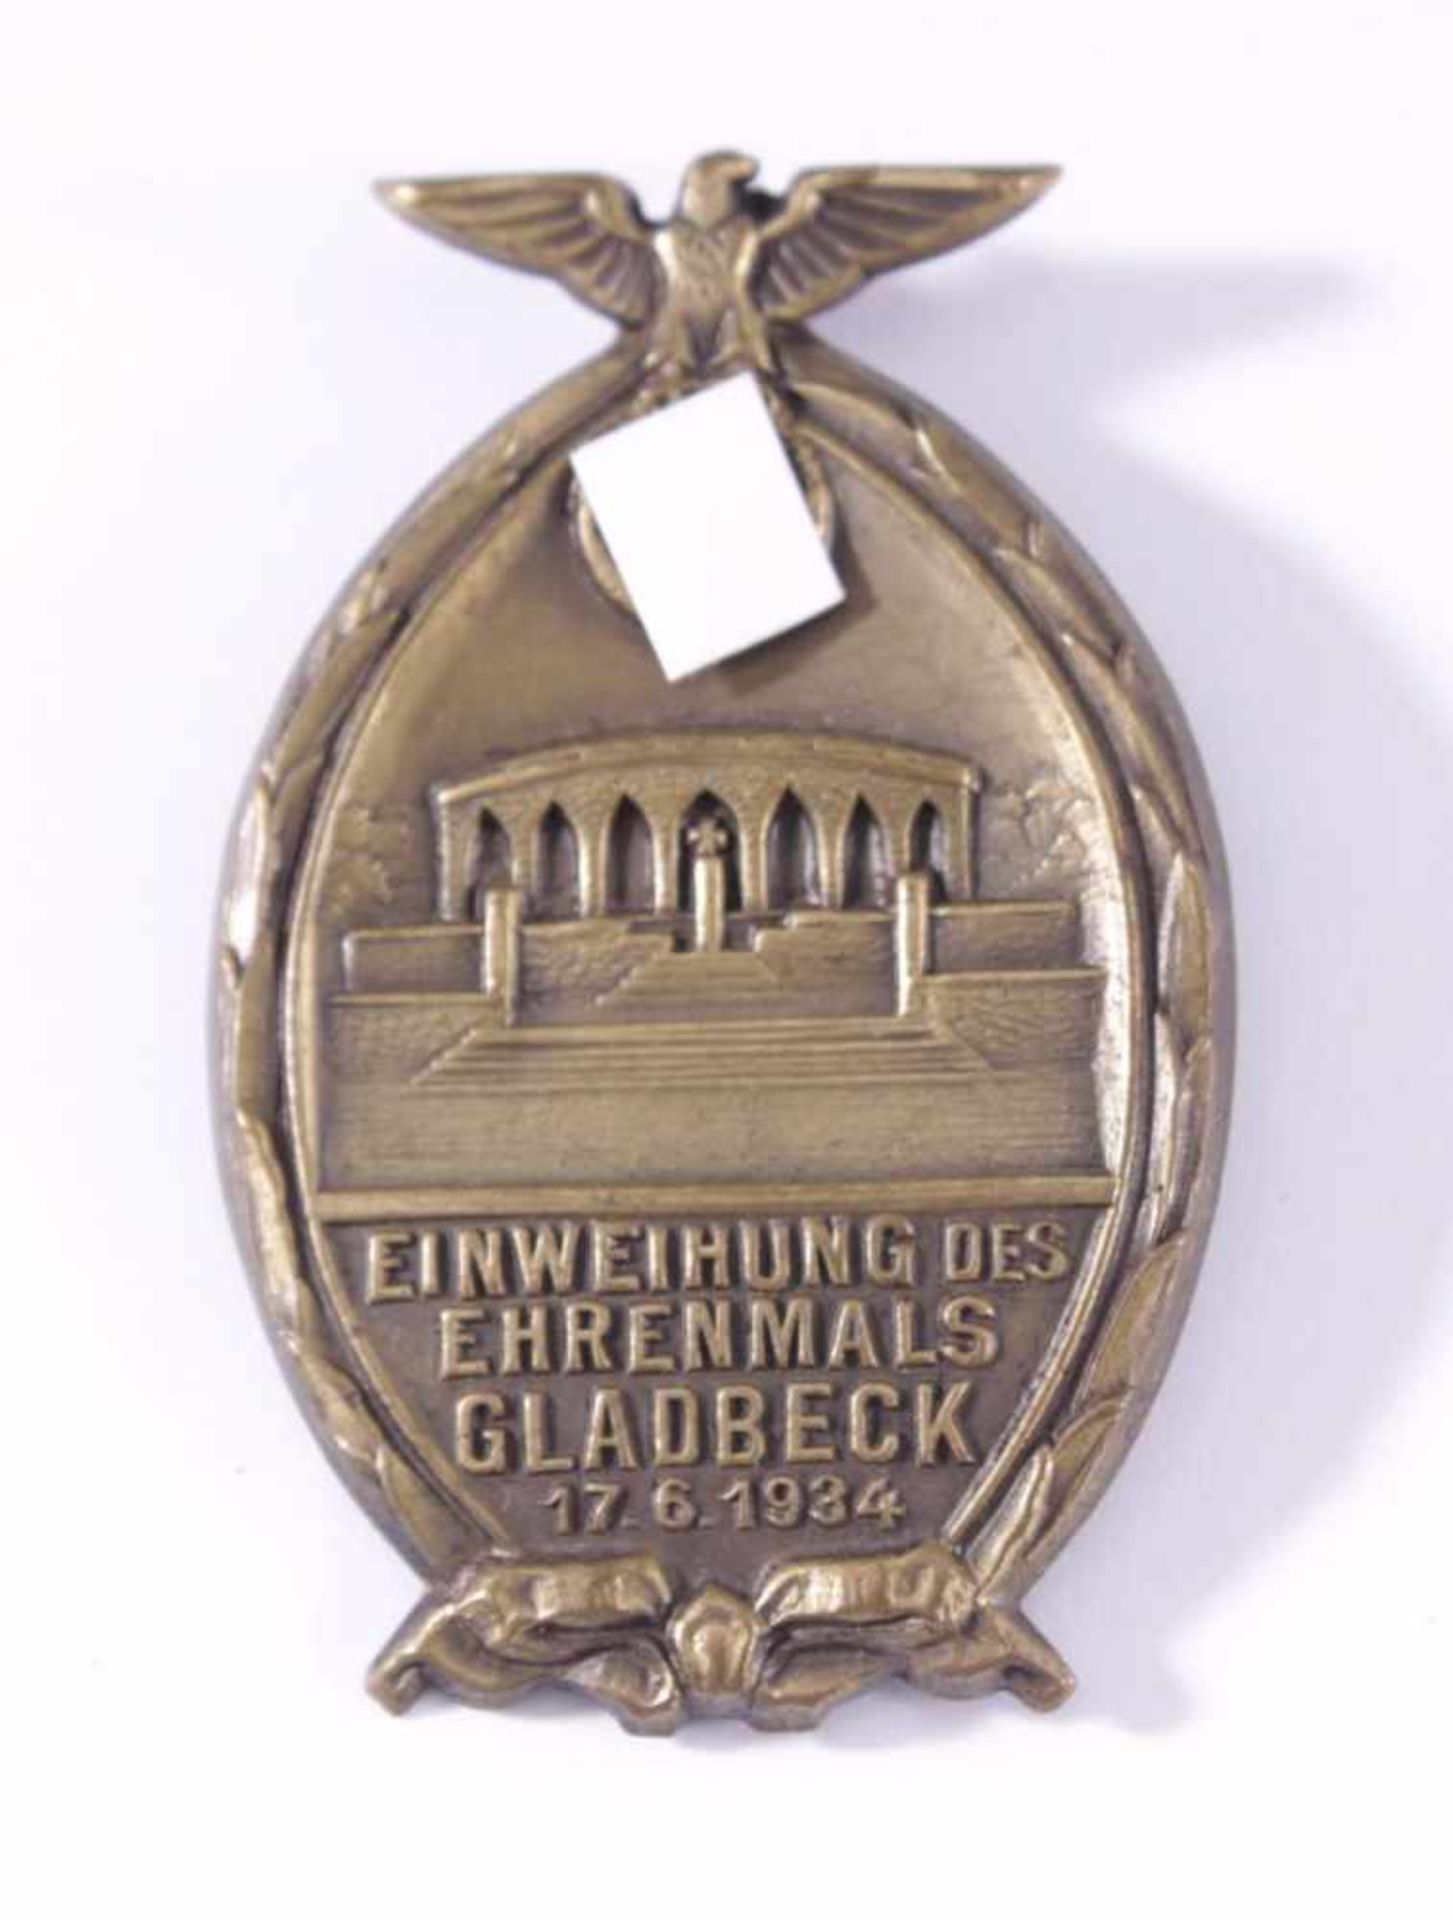 Anstecker III. Reich, GladbeckEinweihung des Ehrenmals Gladbeck 17.6.1934, Metall,bronzefarben,